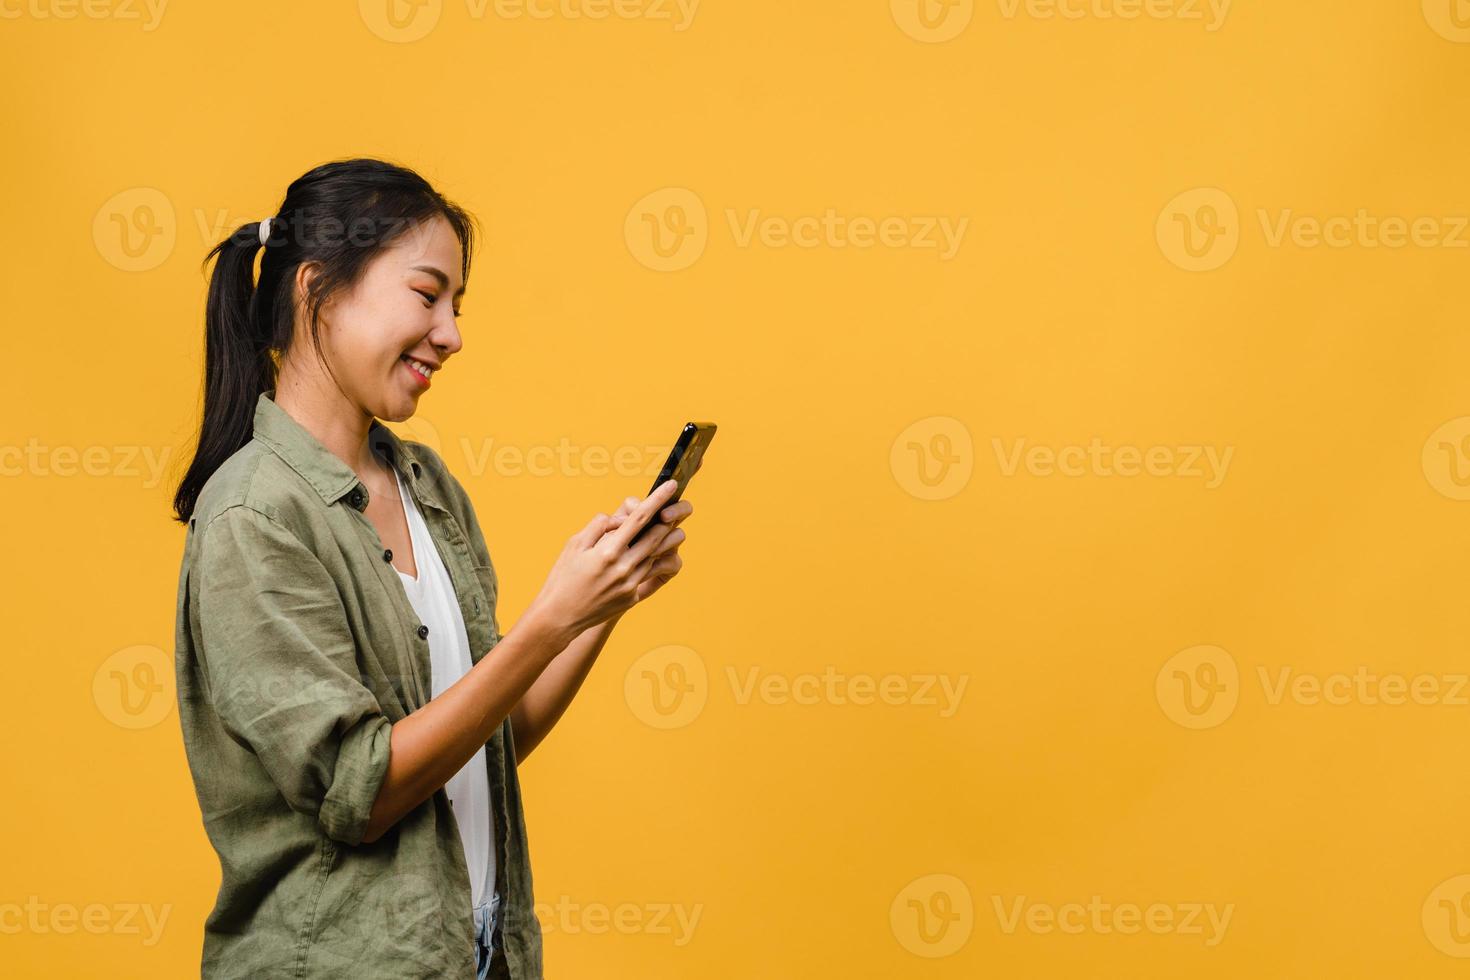 jonge aziatische dame die telefoon gebruikt met positieve uitdrukking, breed glimlacht, gekleed in casual kleding die geluk voelt en geïsoleerd op gele achtergrond staat. gelukkige schattige blije vrouw verheugt zich over succes. foto